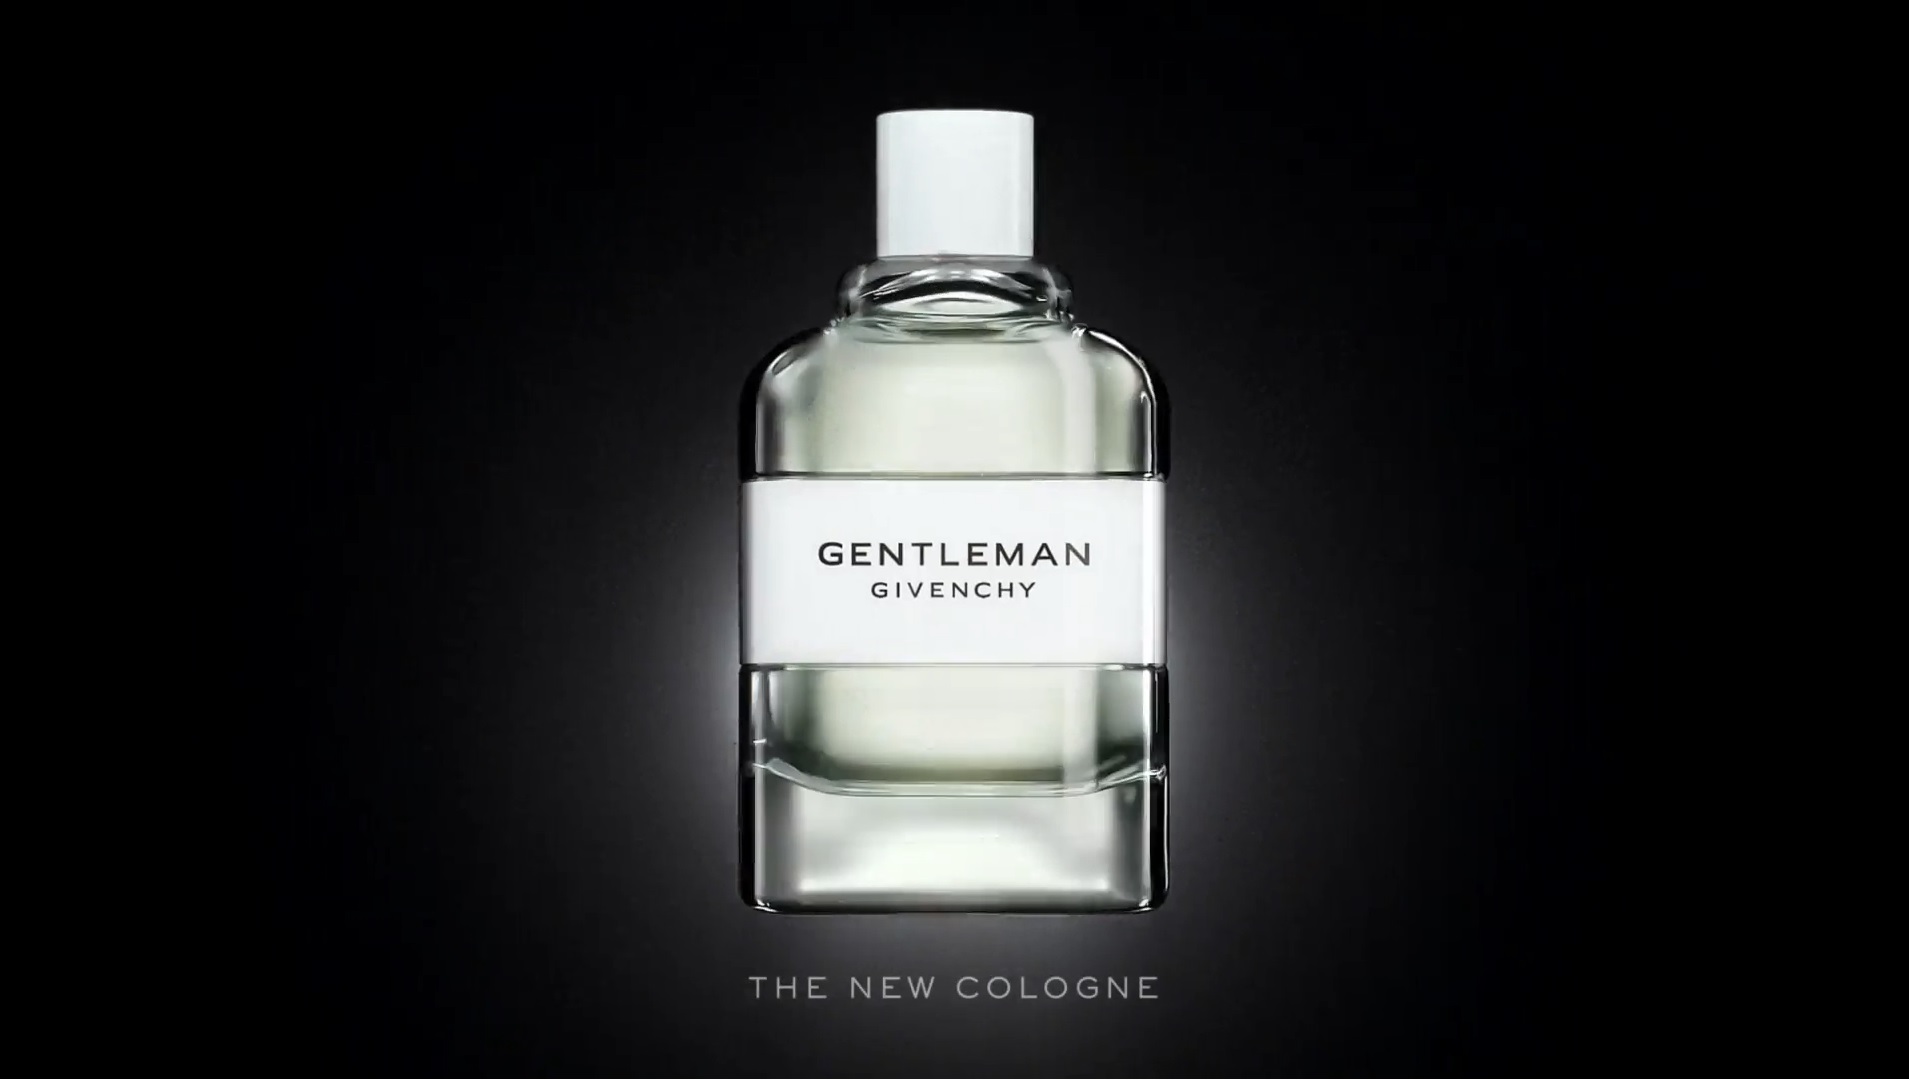 Одеколон Givenchy Gentleman Cologne. Dior homme Cologne. Одеколон Gentleman 10. EDC Gentleman. Живанши мужские летуаль